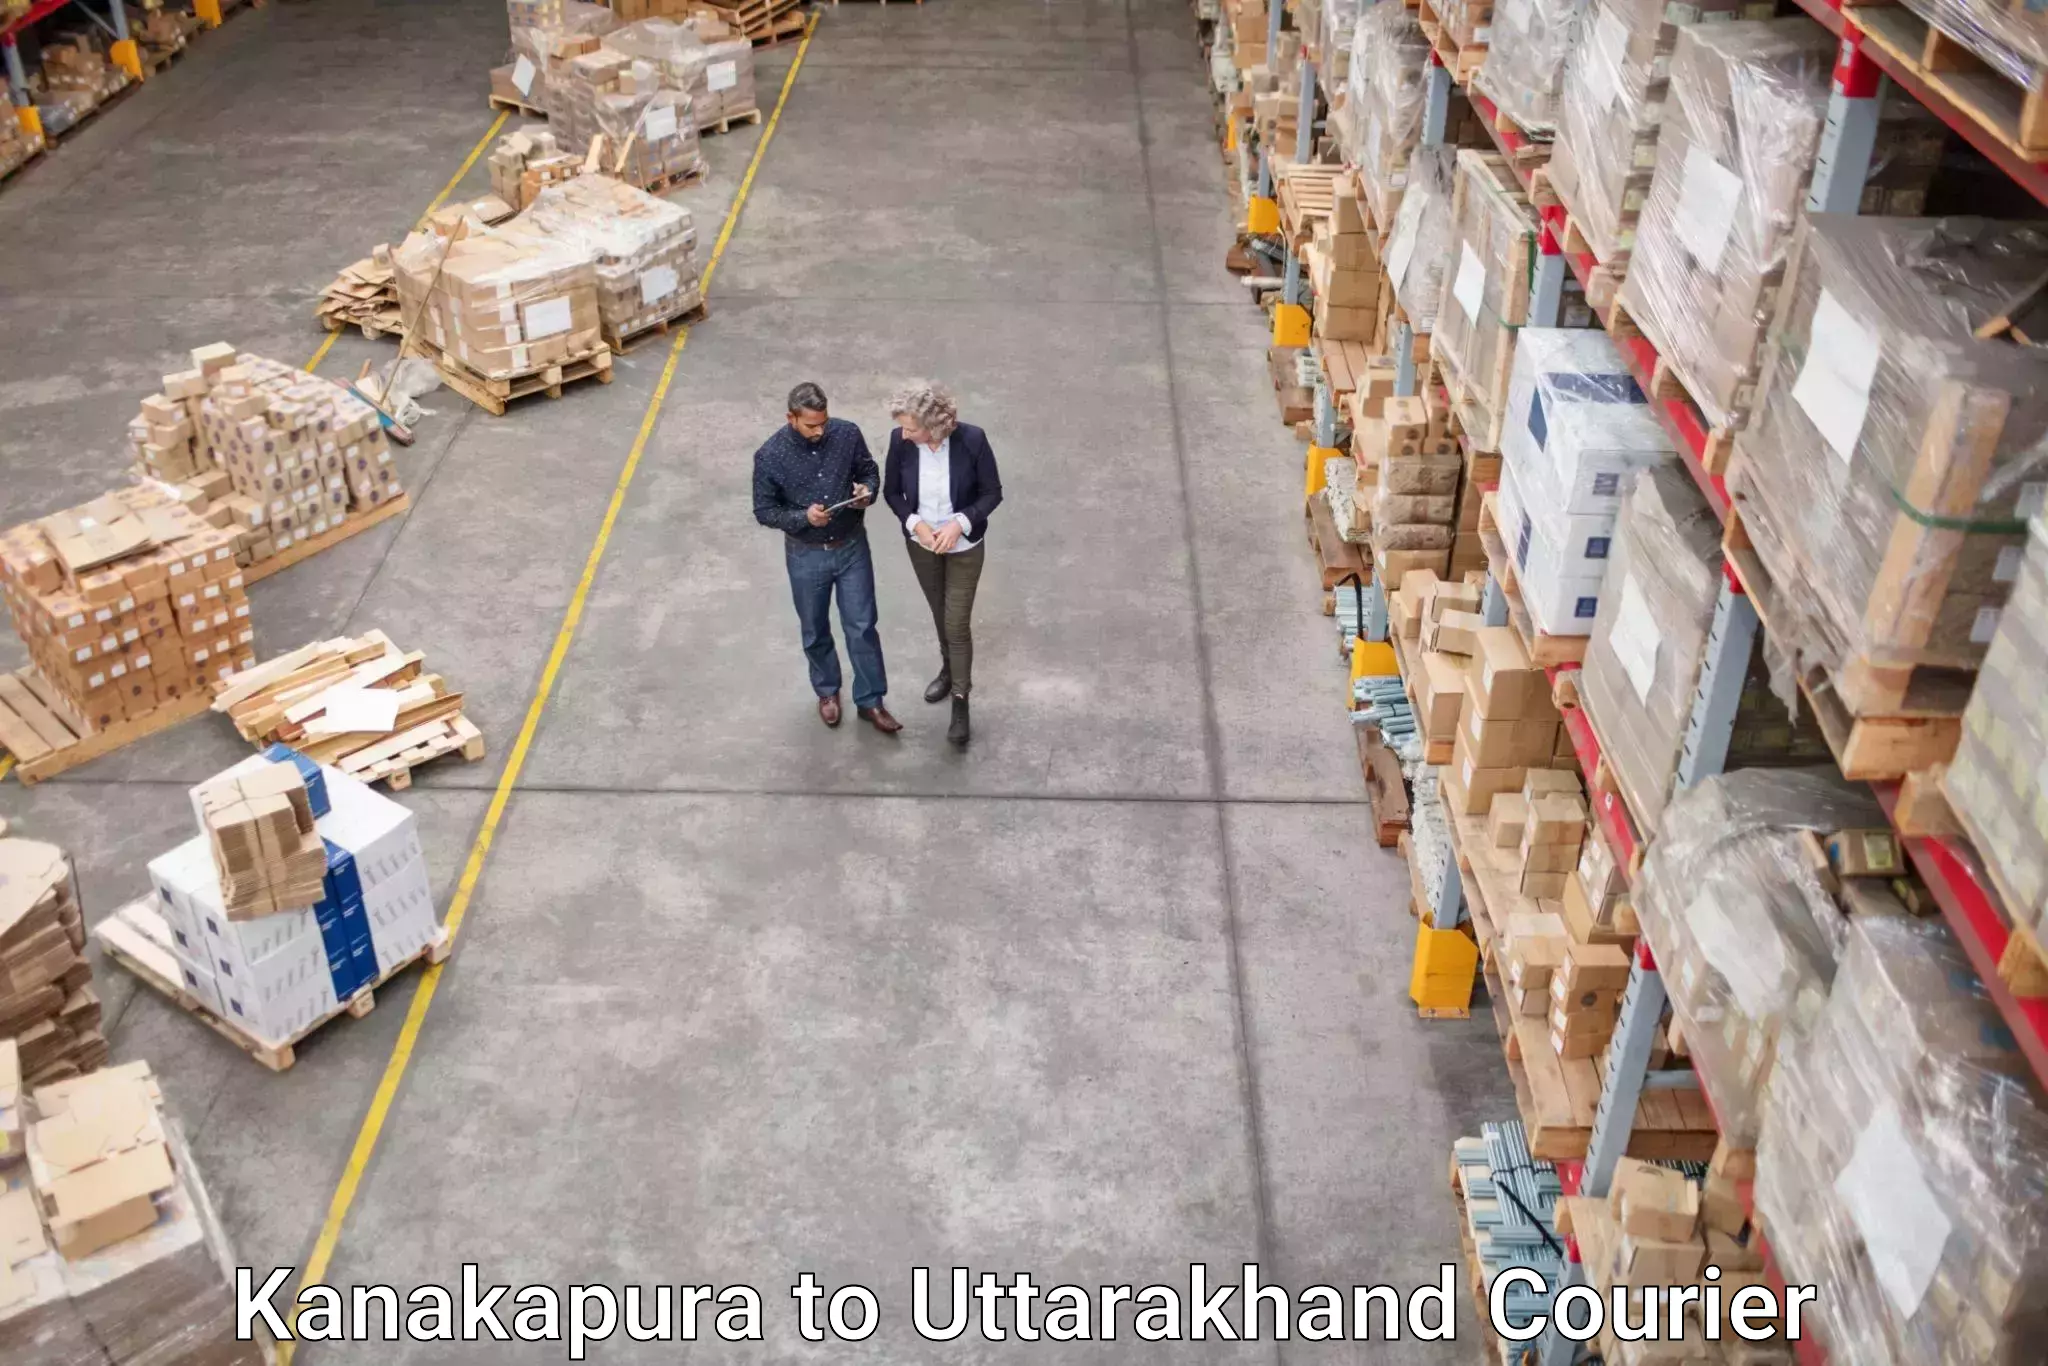 Express delivery solutions Kanakapura to Uttarkashi